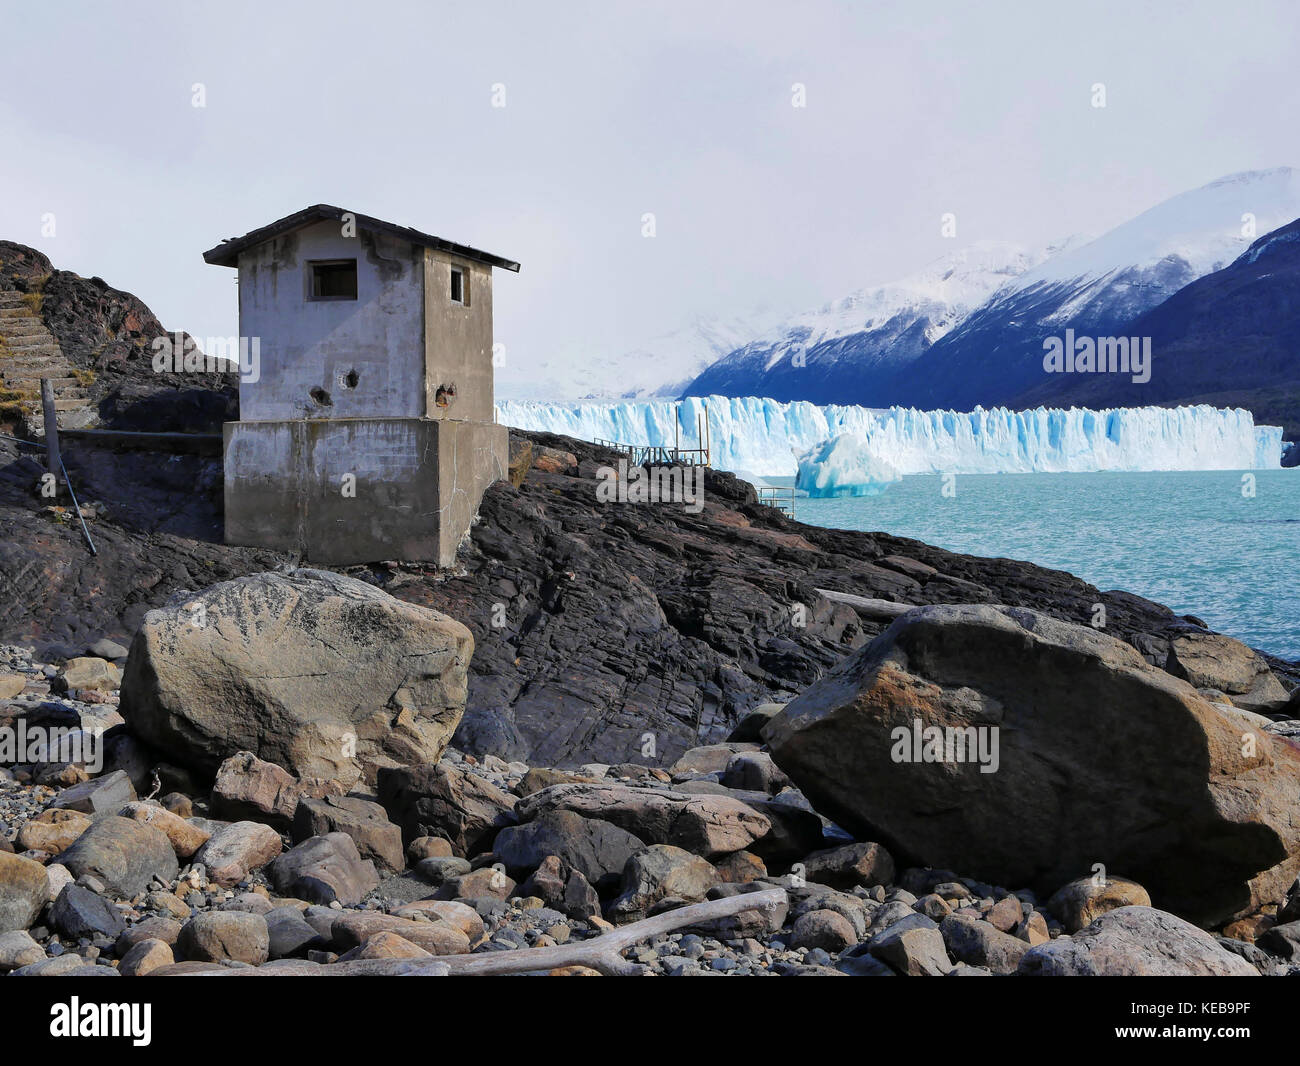 Concrete abandoned building on shore of Lago Argentino, Perito Moreno Glacier, Argentina Stock Photo